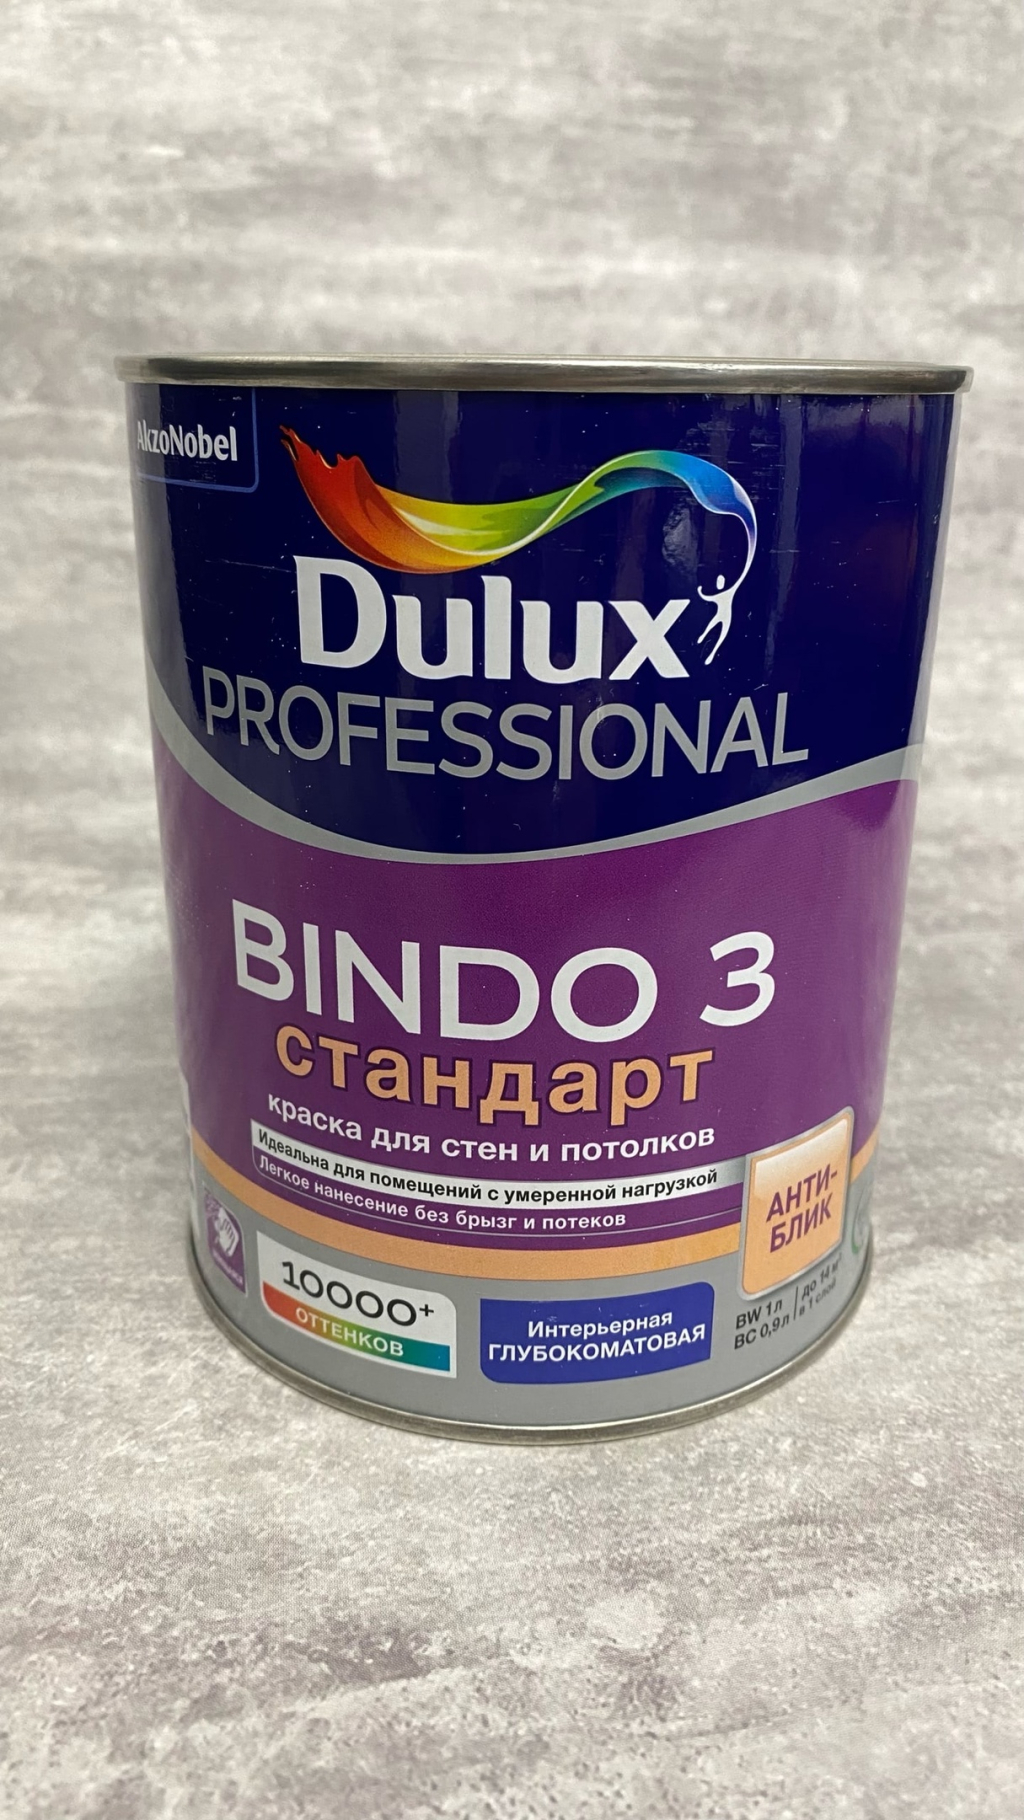 Интерьерная краска Dulux Bindo 3 - Безопасная краска высшего качества